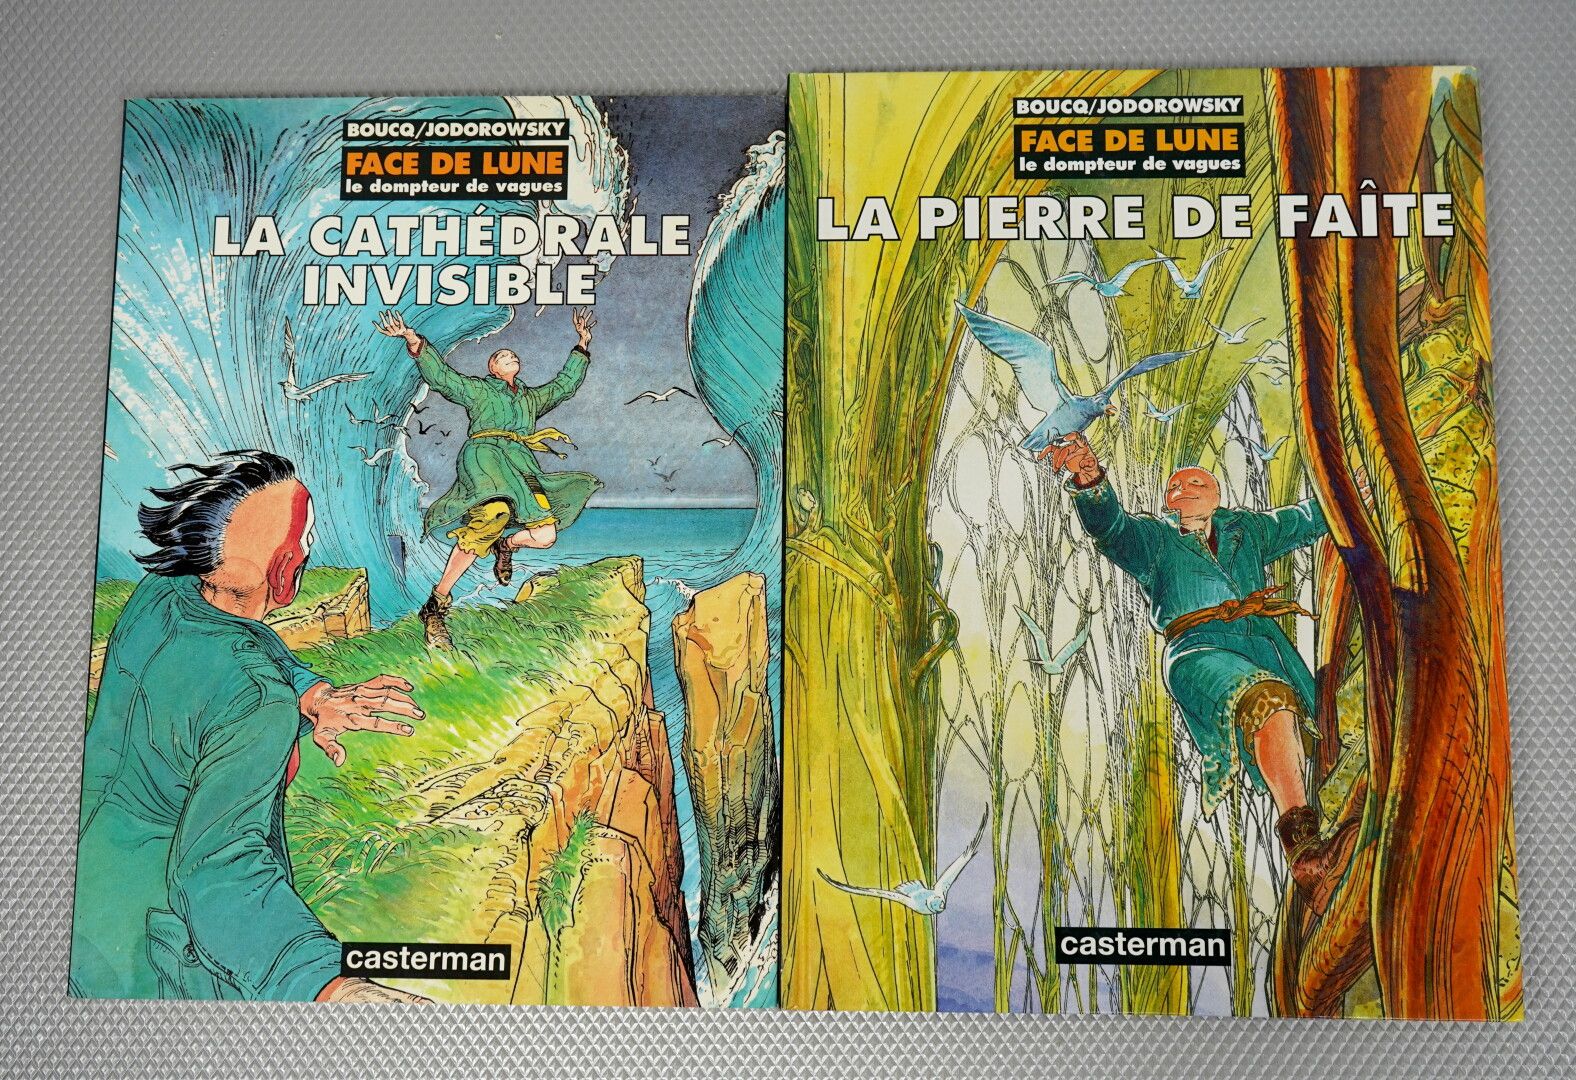 Null Adventures of Jérôme Moucherot (BOUCQ) volumes 1 to 4



Face de Lune (Bouc&hellip;